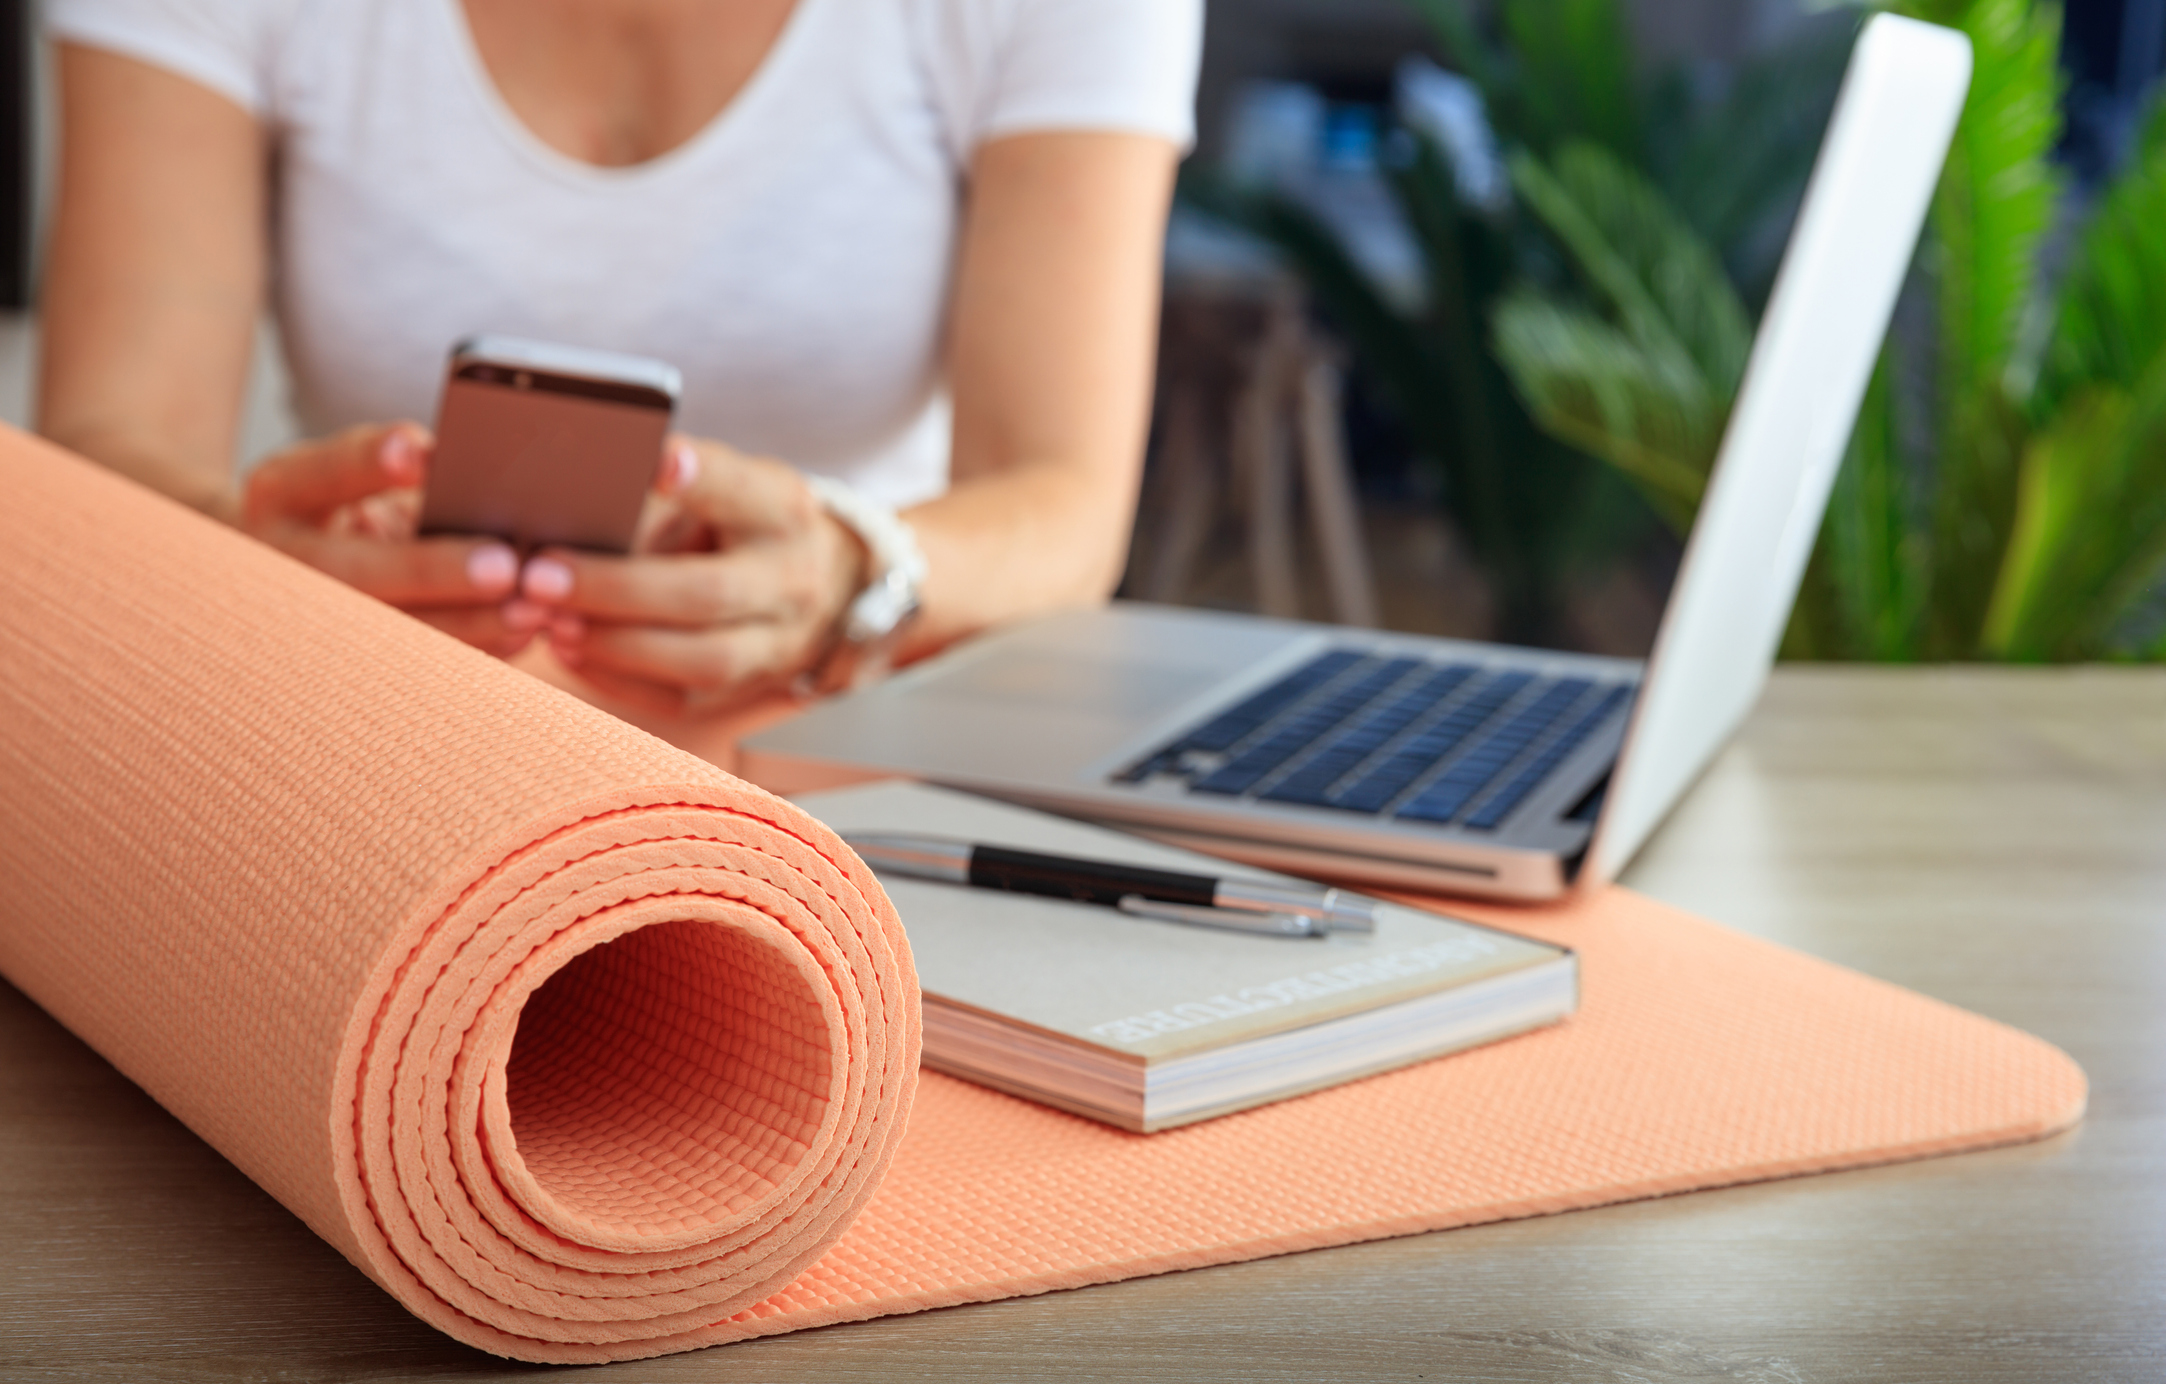 Employee enjoying employee wellness plan with yoga mat